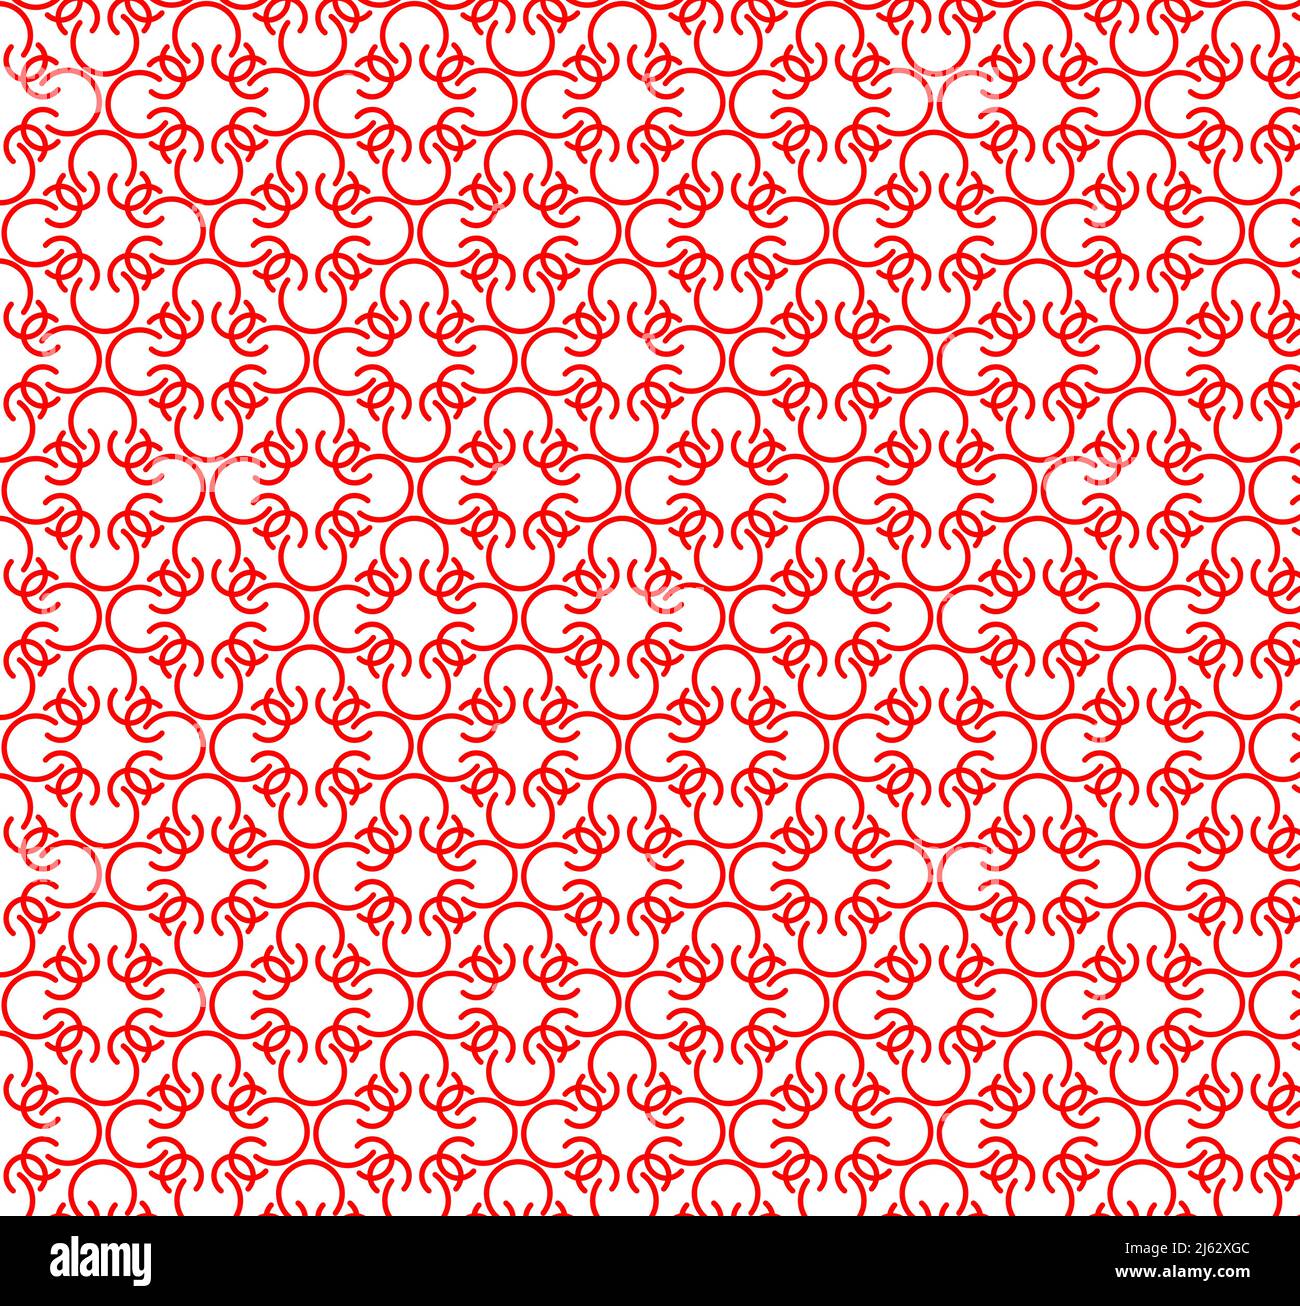 Tracciato rosso astratto e pattern vettoriale senza giunture della curva. Illustrazione Vettoriale